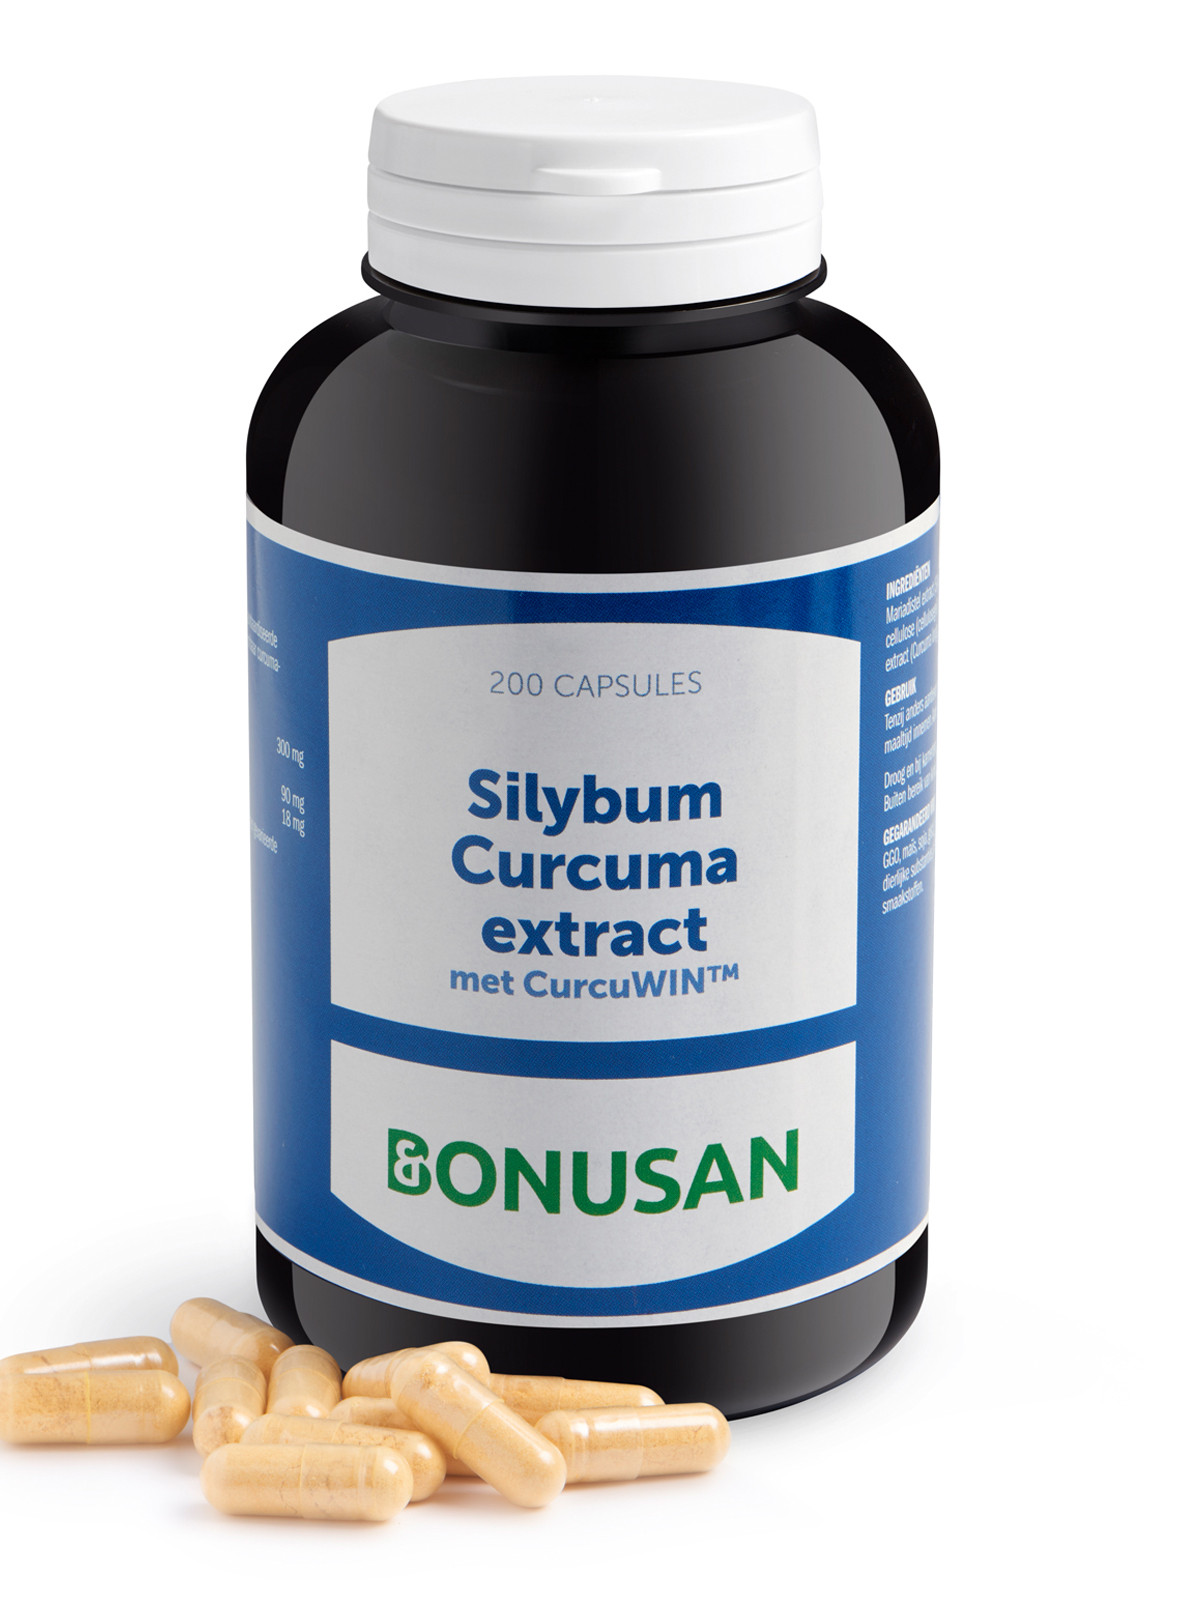 Bonusan - Silybum-Curcuma extract - 200 stuks